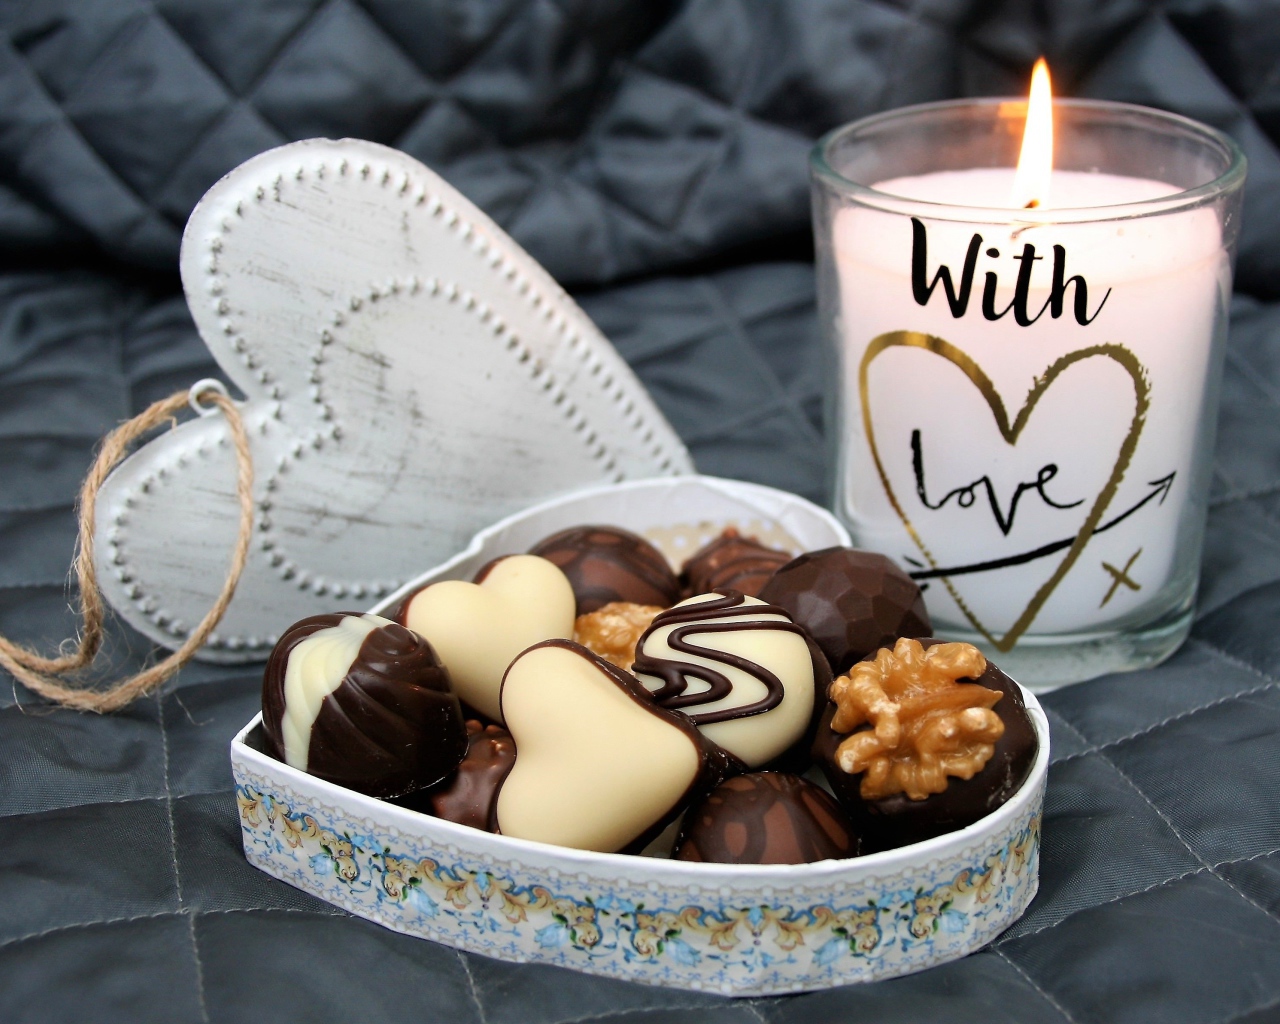 Шоколадные конфеты в коробке в форме сердца на кровати с зажженной свечой 